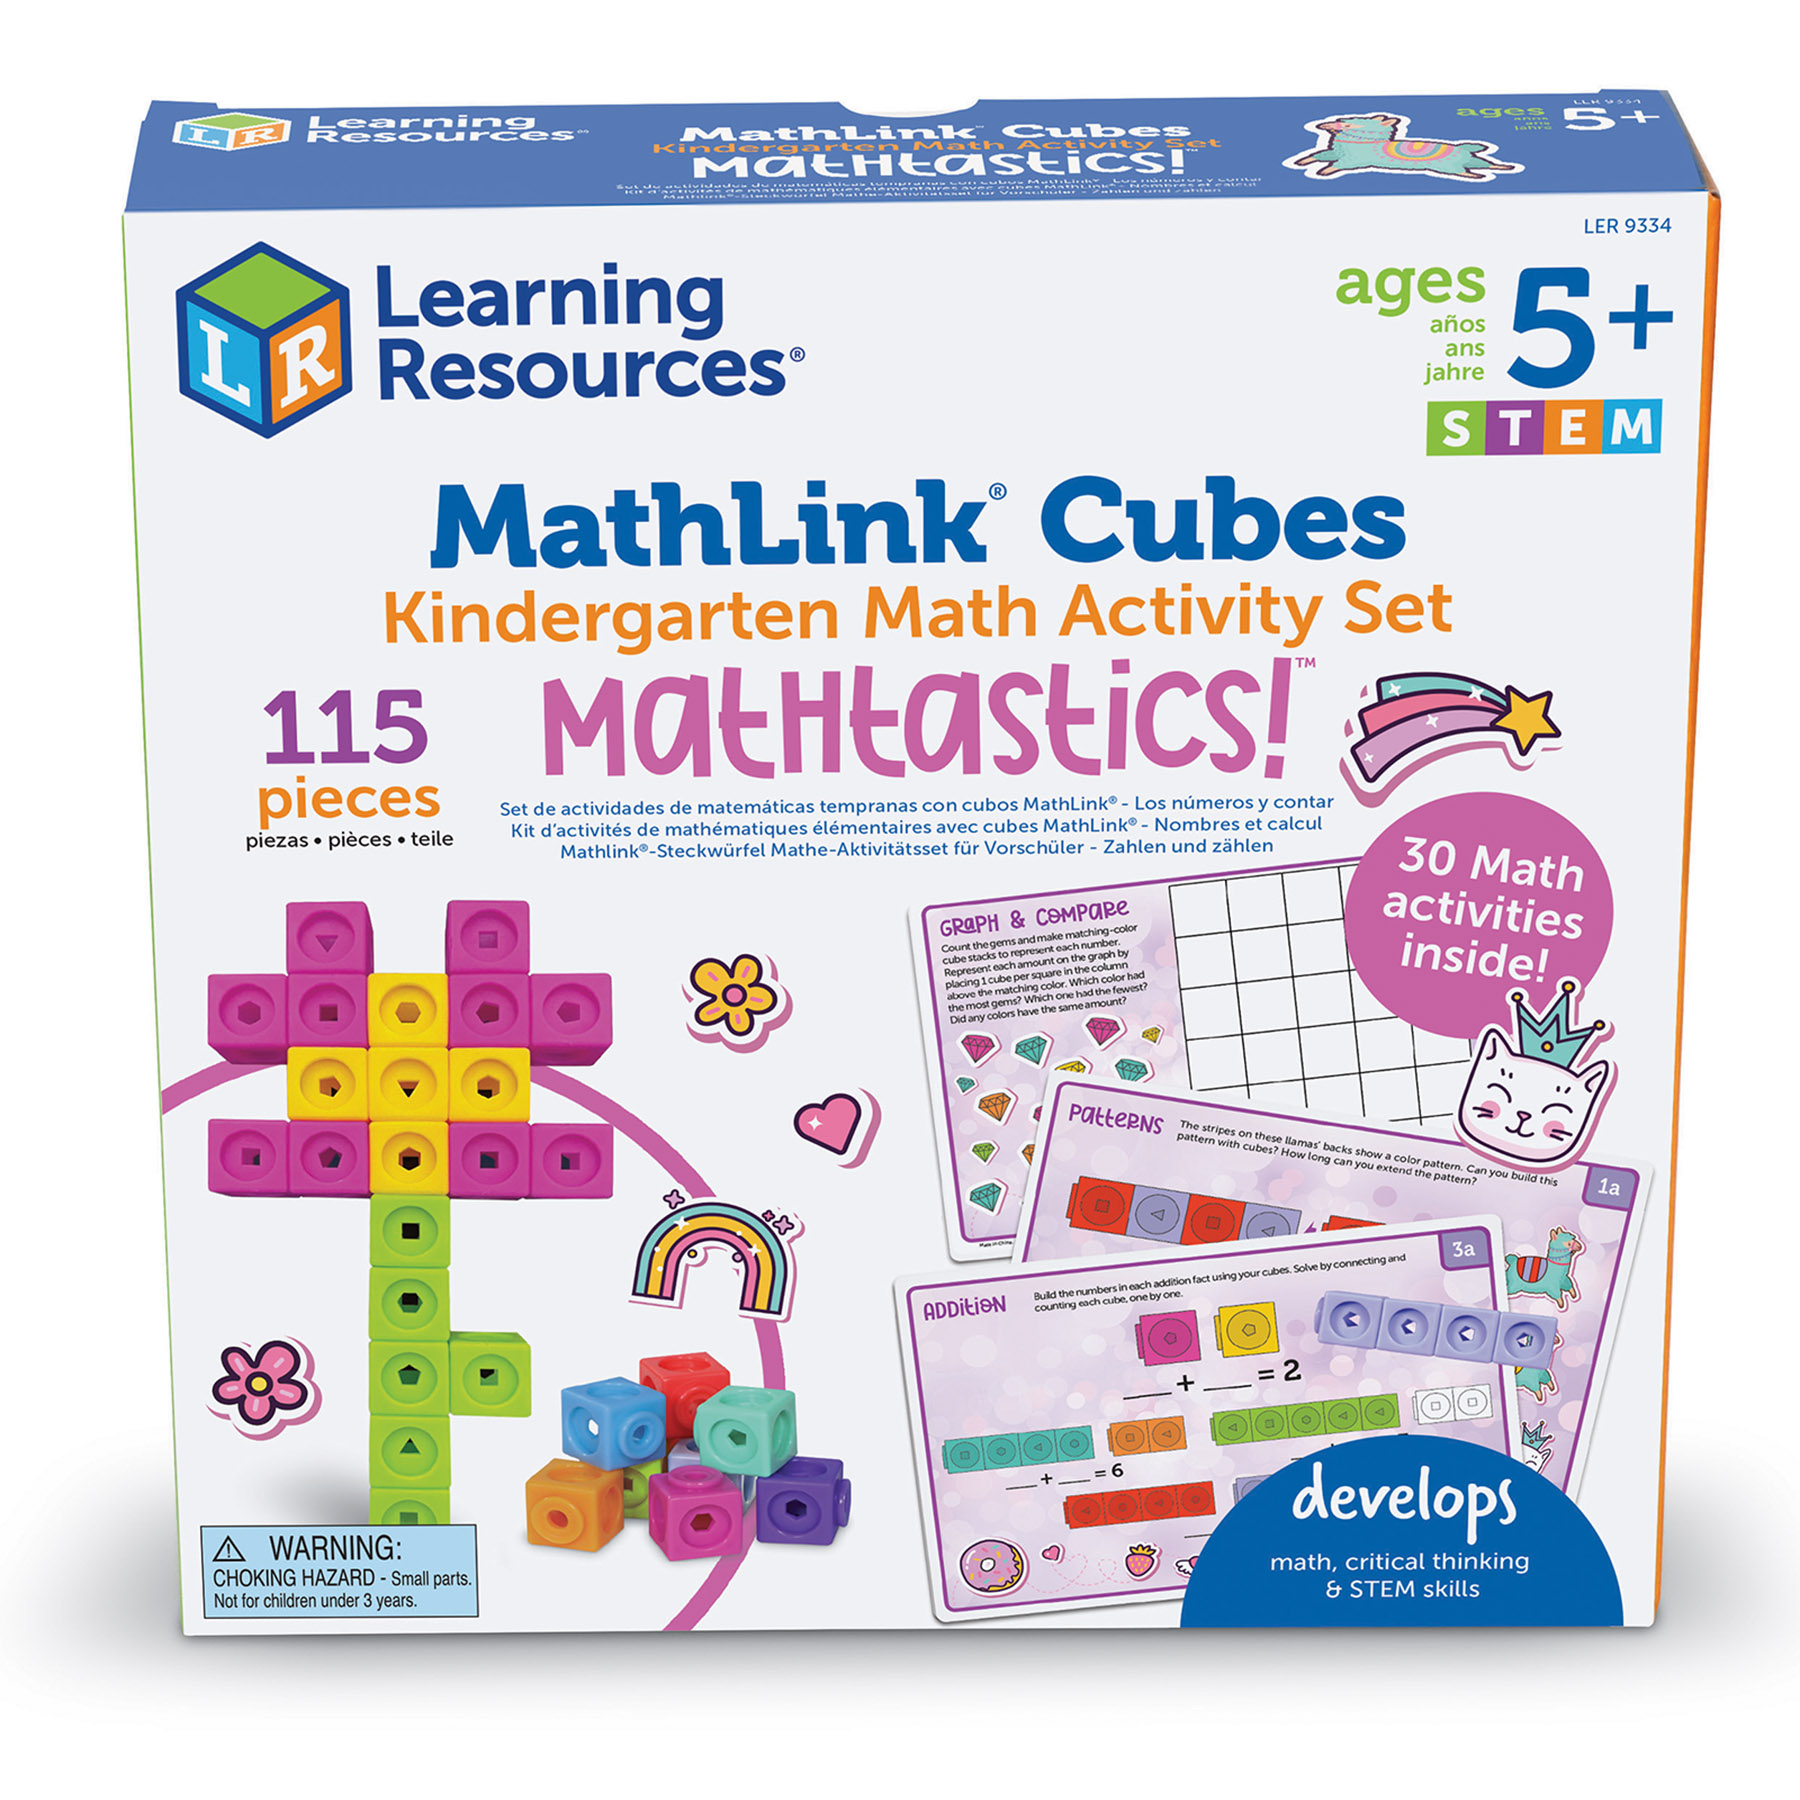 Learning Resources Mathlink Cubes Kindergarten Math Activity Set: Mathatics!